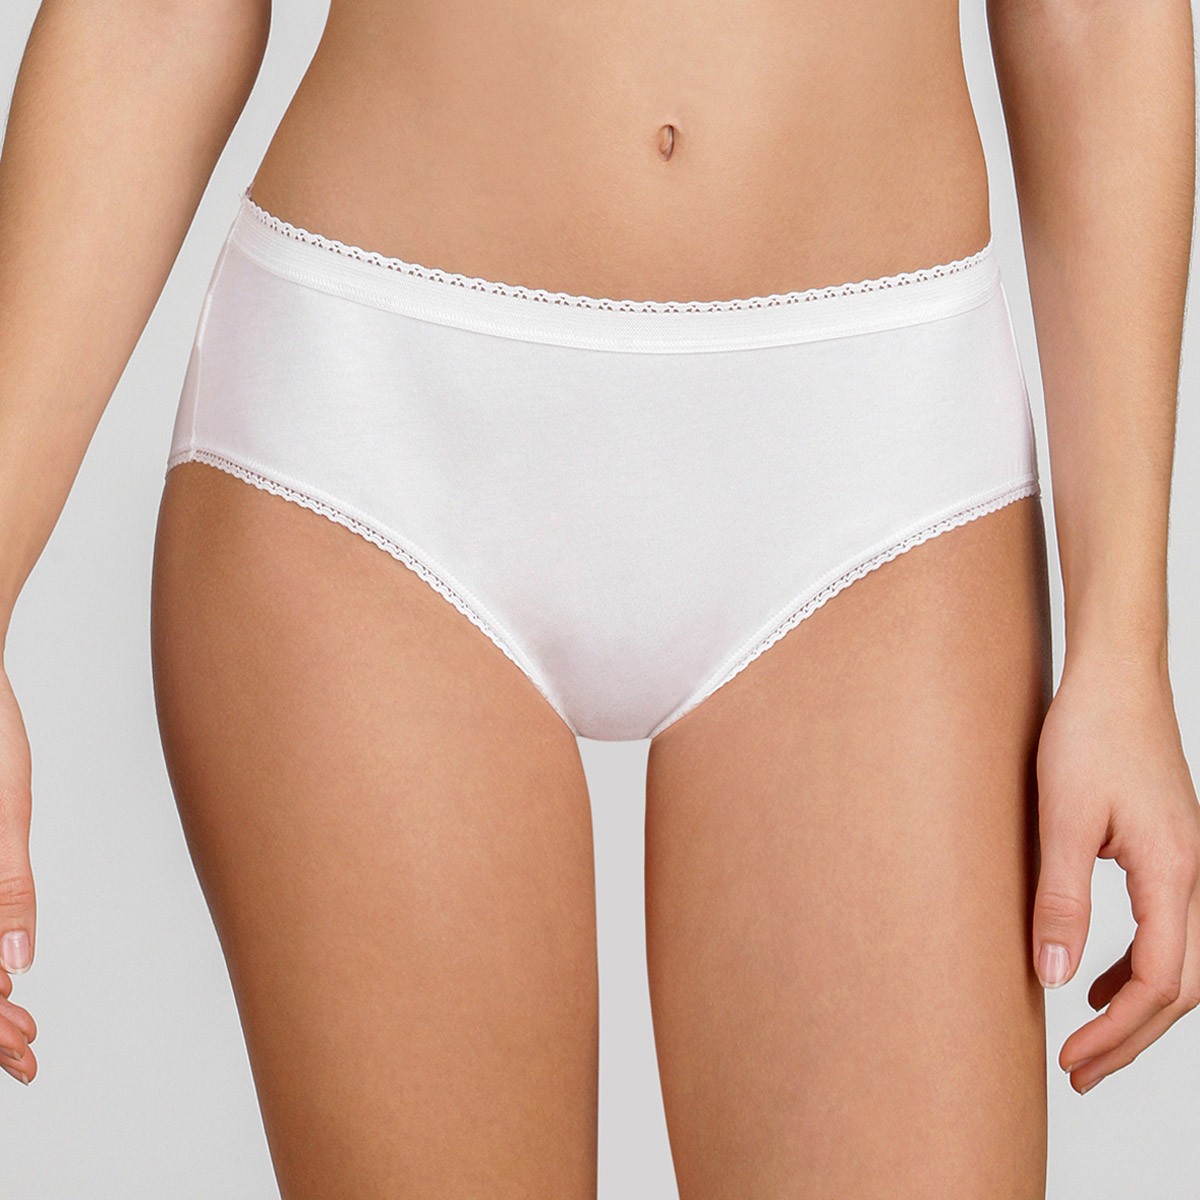 Confezione 6 Slip Playtex Cherish Mini donna 95% Cotone mutande elastiche -  Paola Fiorini